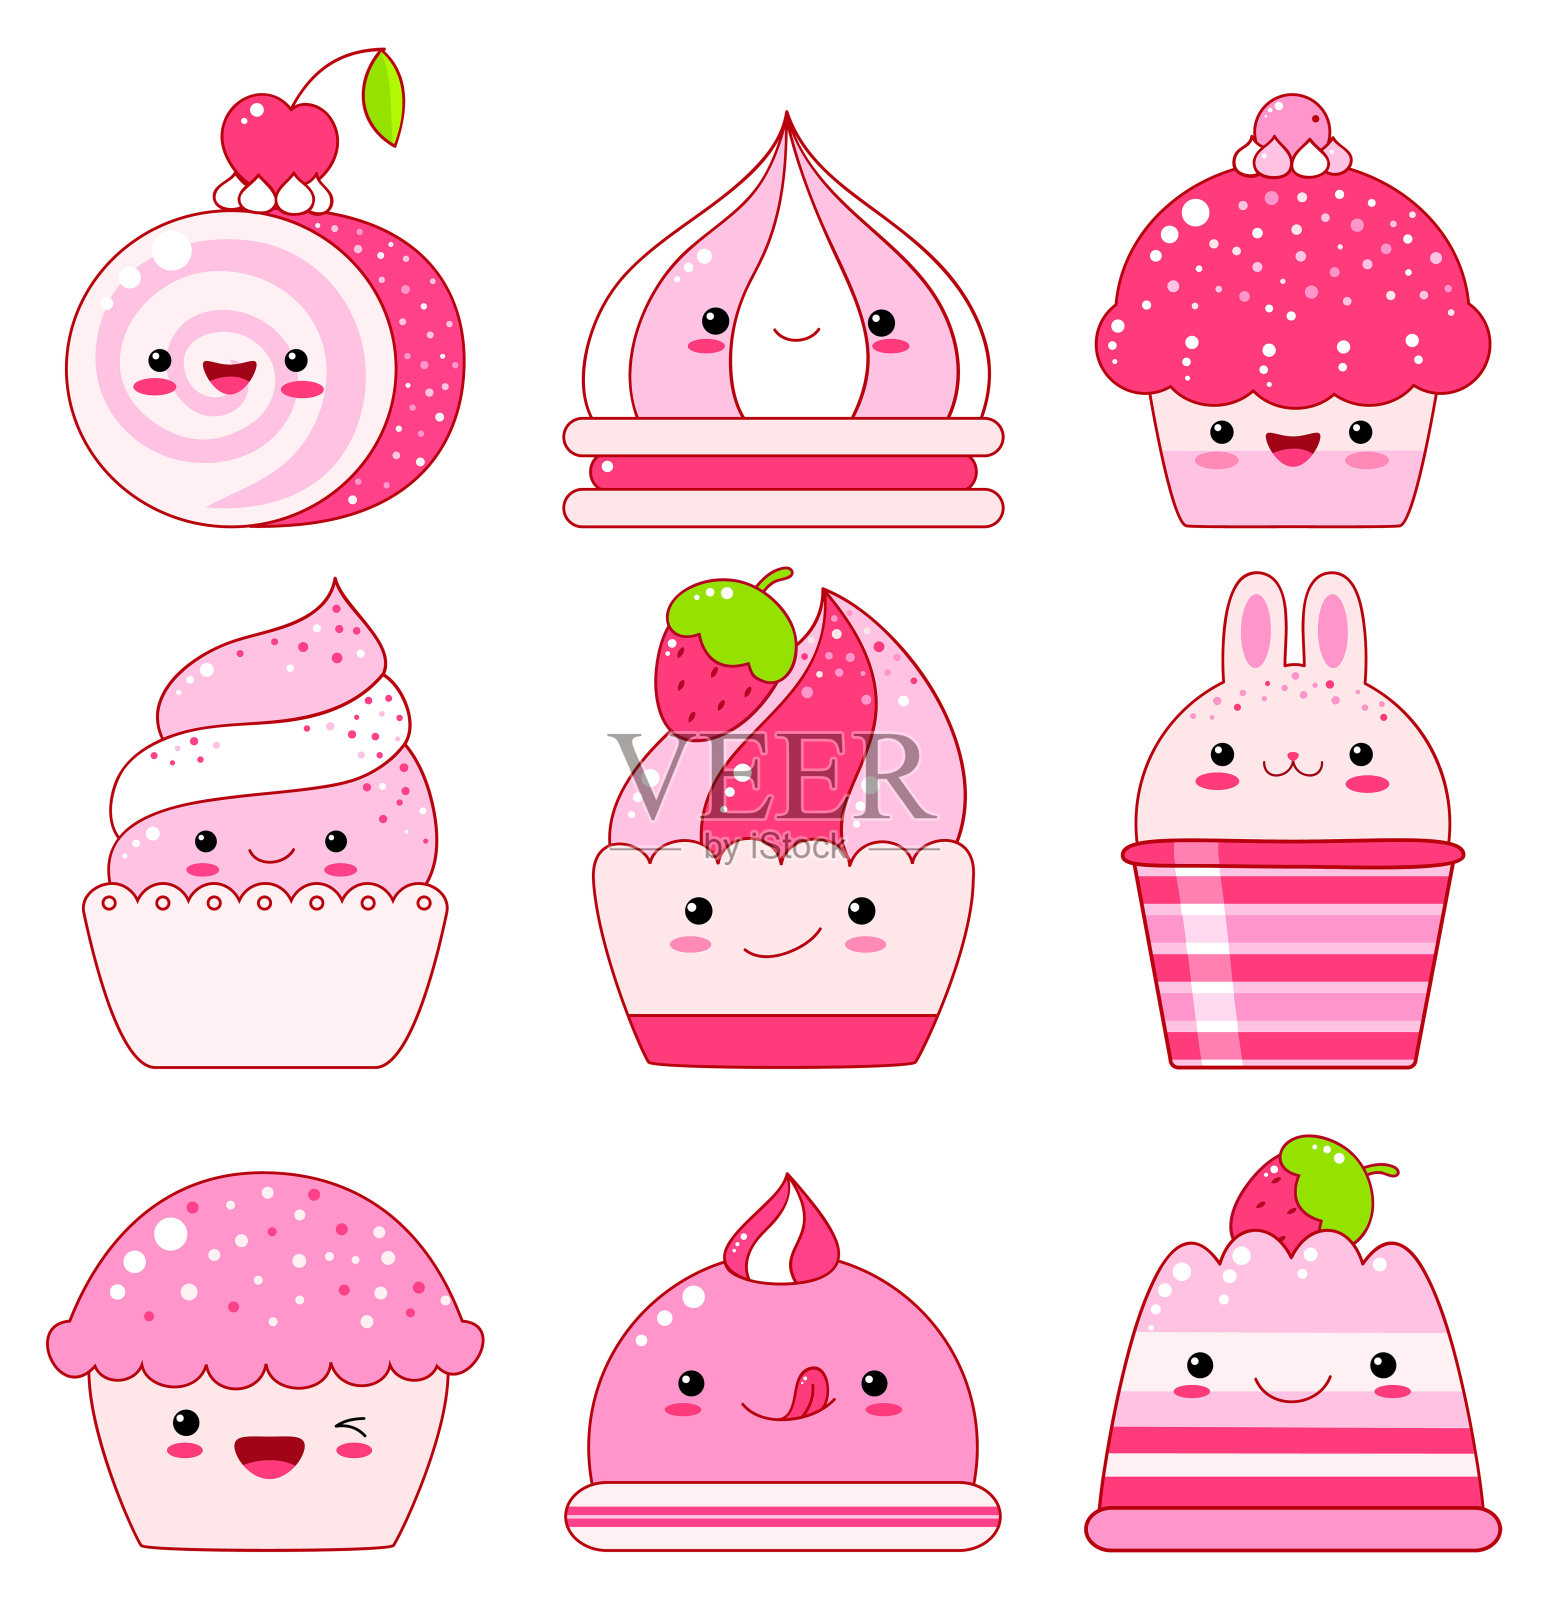 果冻，冰淇淋，棉花糖，草莓纸杯蛋糕插画图片素材